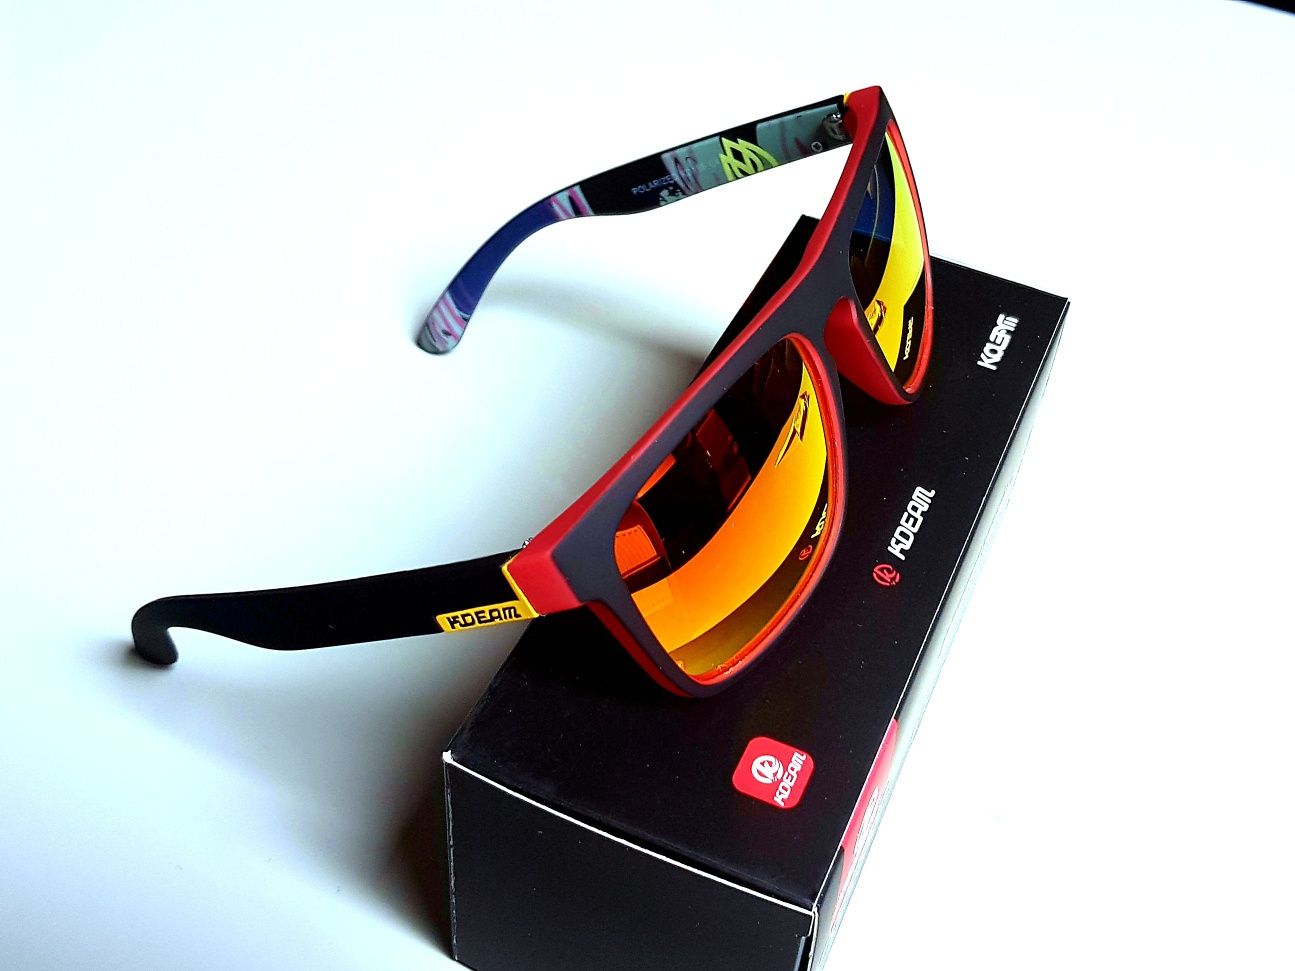 Okulary przeciwsłoneczne KDEAM UV400 polaryzacyjne